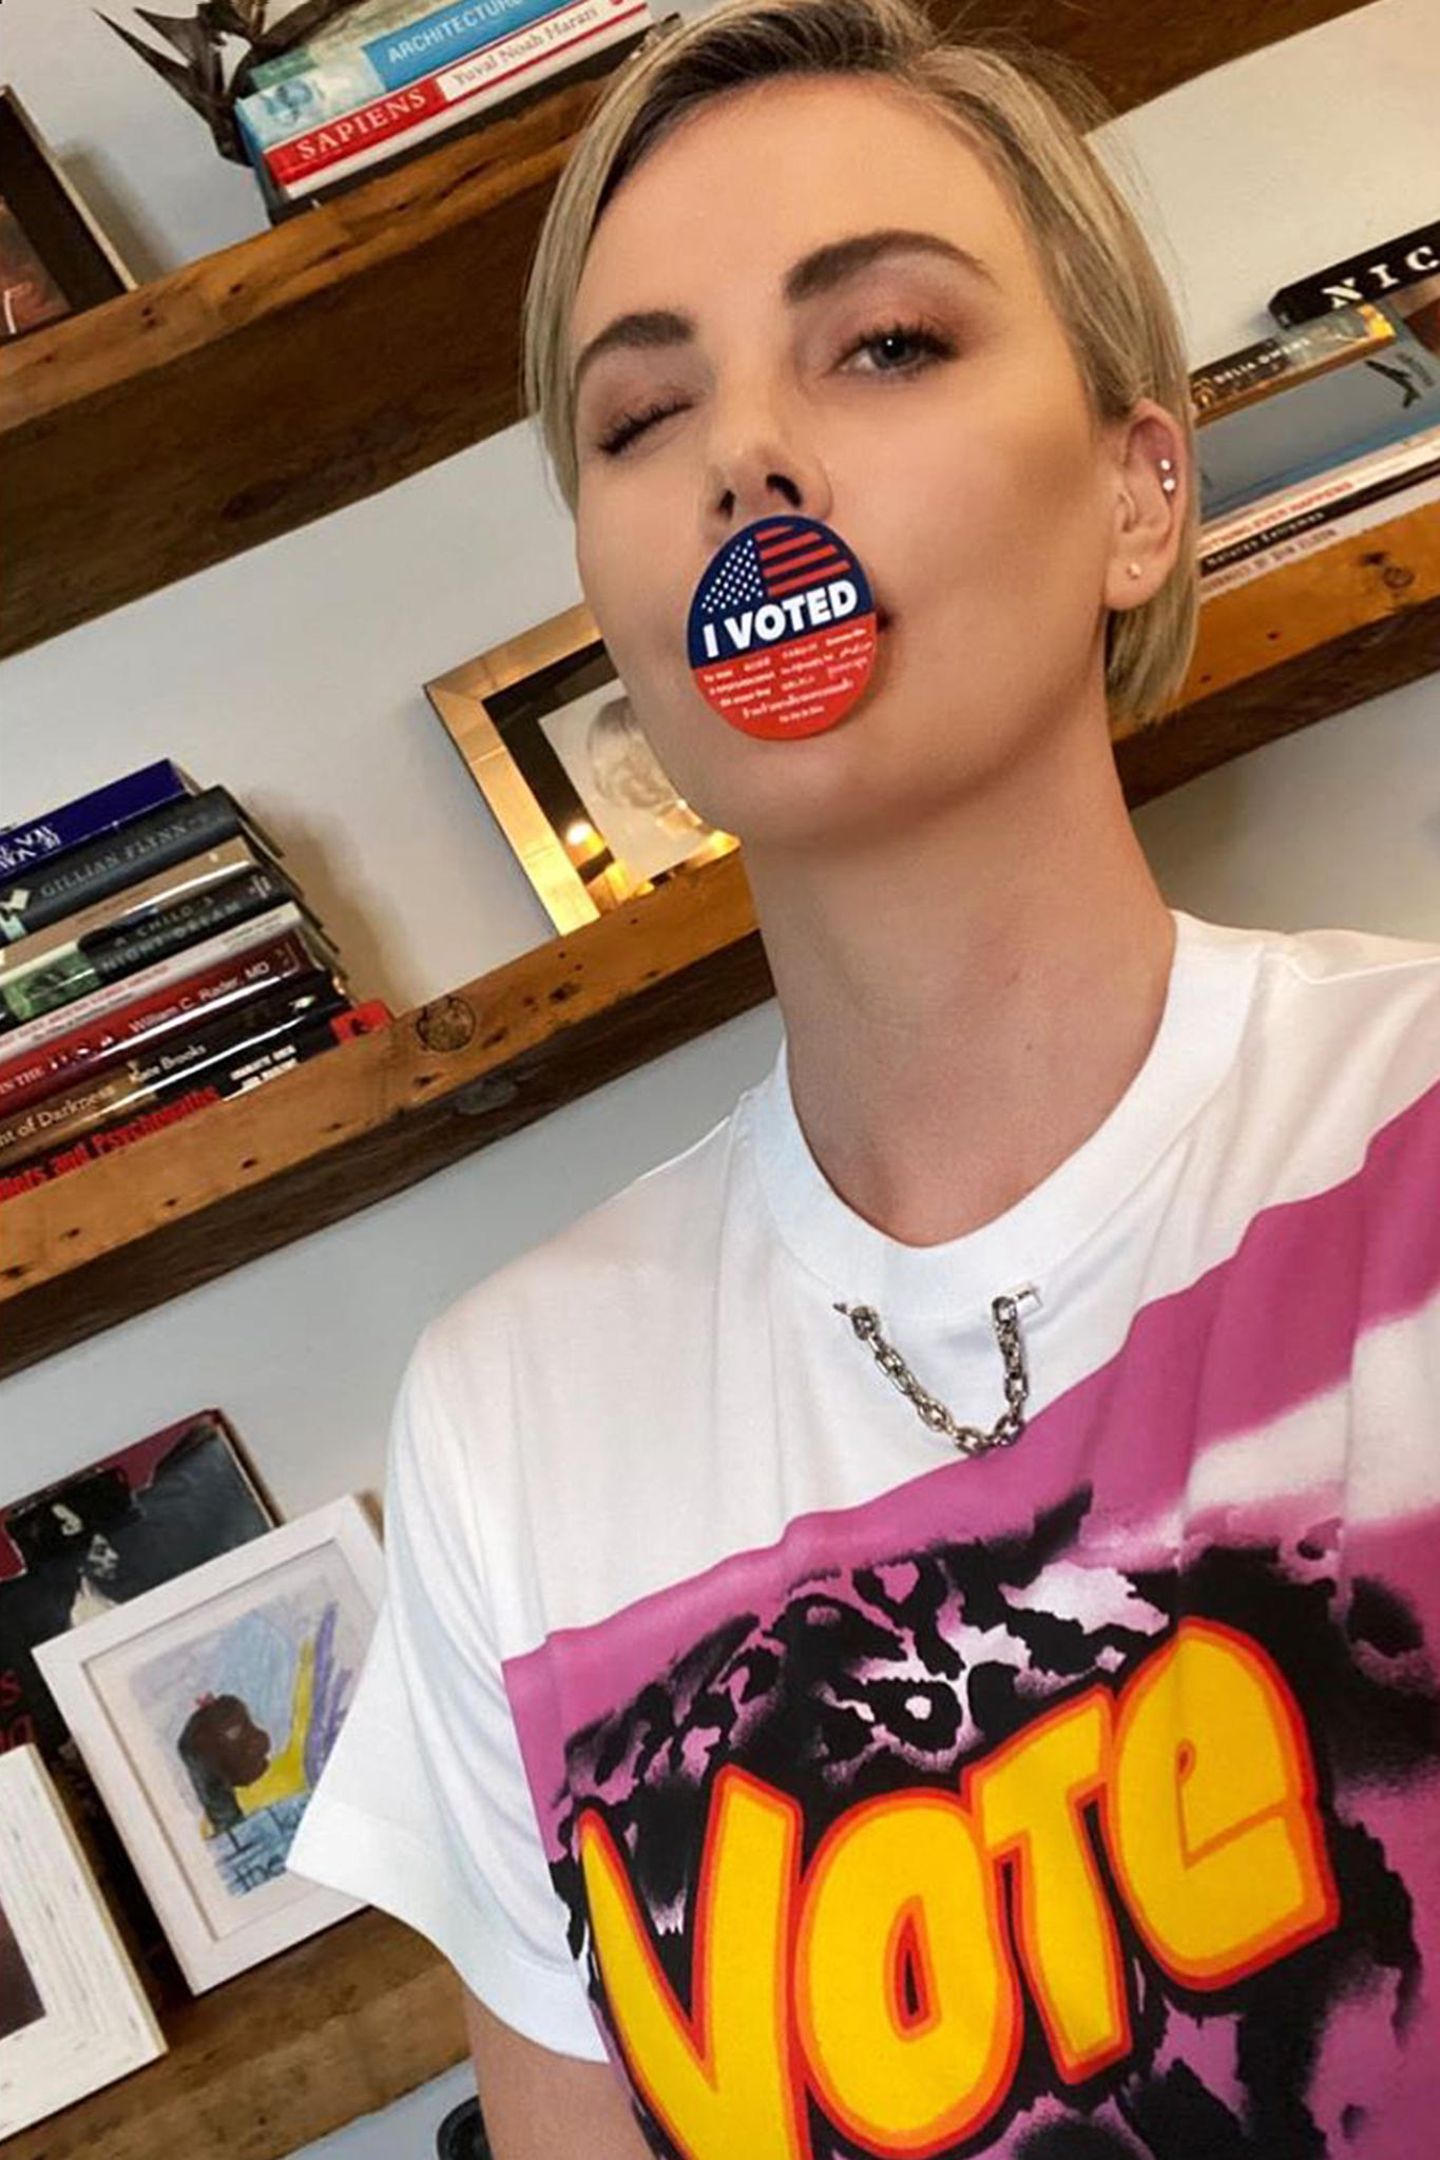 Wählen ist sexy! Charlize Theron ist der Meinung, dass jeder Gang zur Wahlurne im Anschluss ein leicht verführerisches Zwinker-Selfie mit dem "I voted"-Sticker verdient. Ihres ist ziemlich gut gelungen.